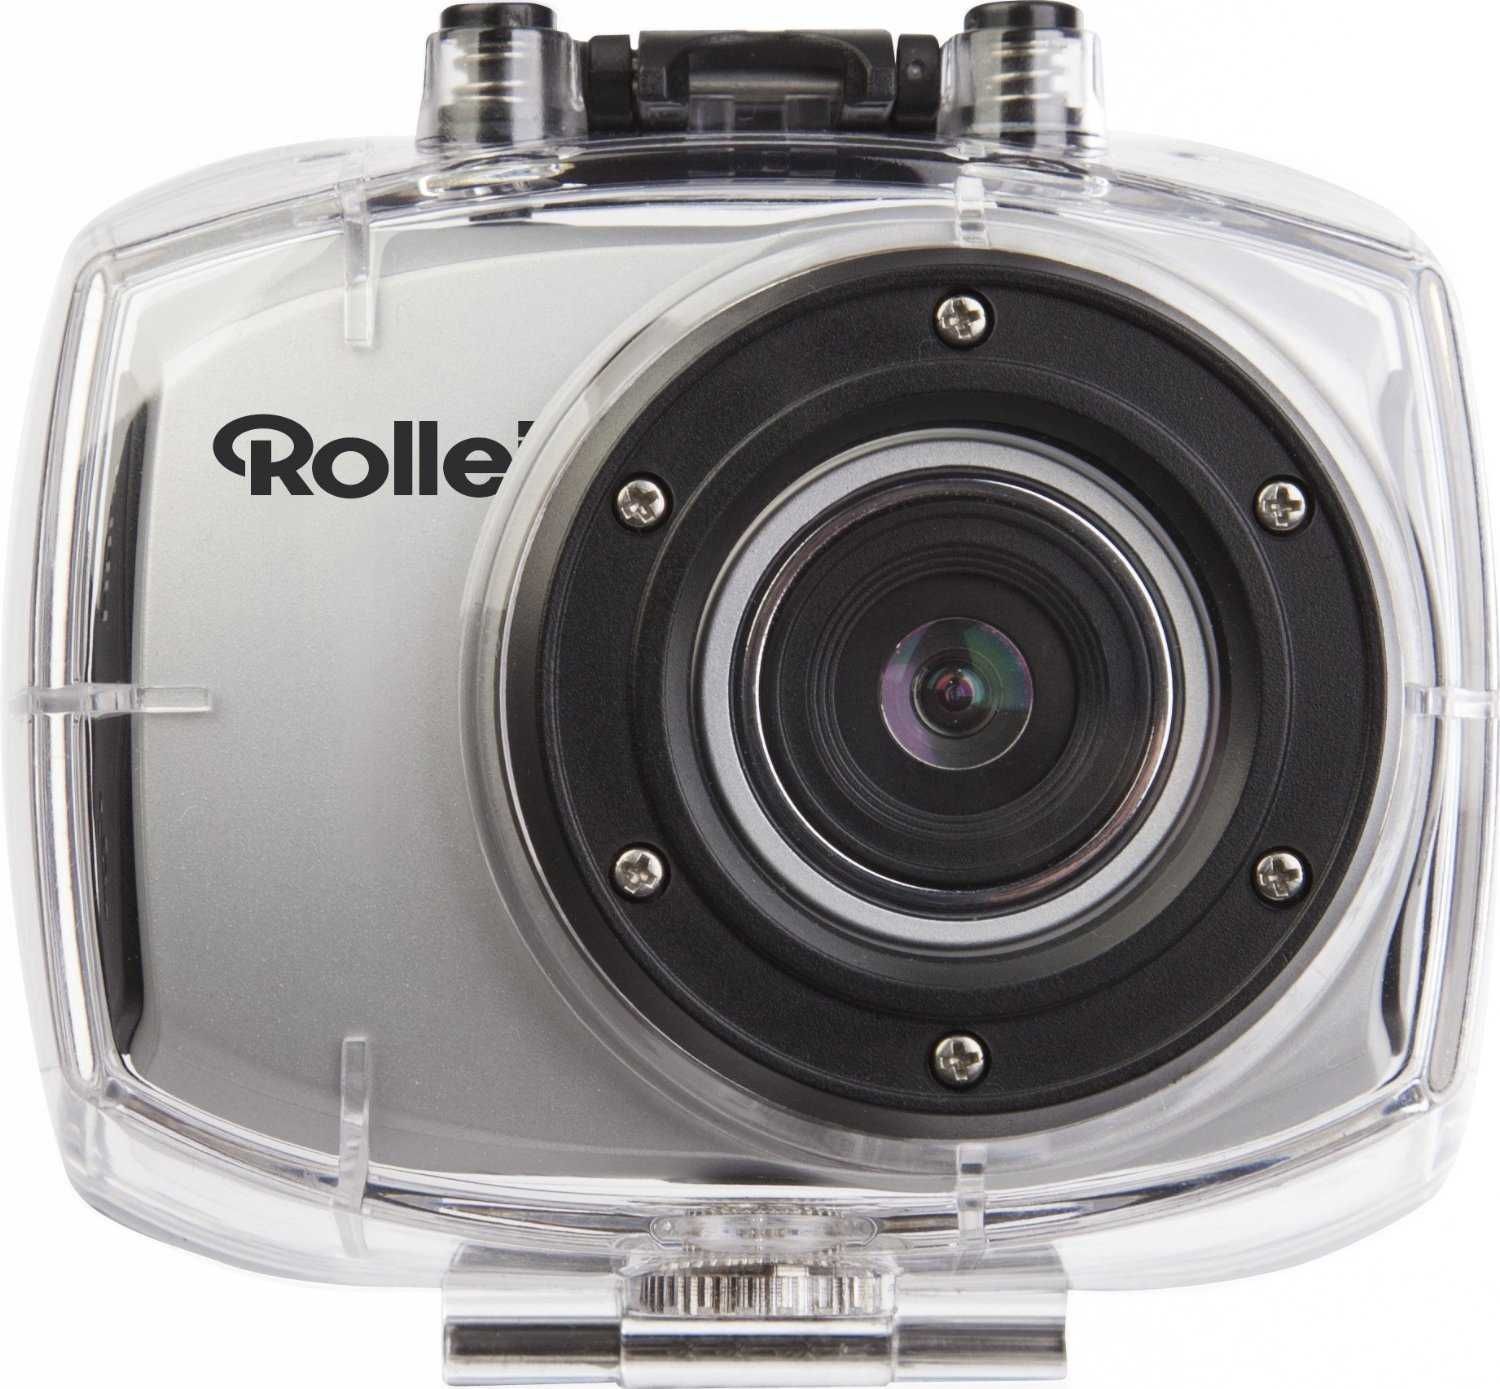 Maquina foto Rollei Racy Full HD;comando;caixa estanque; ler anuncio